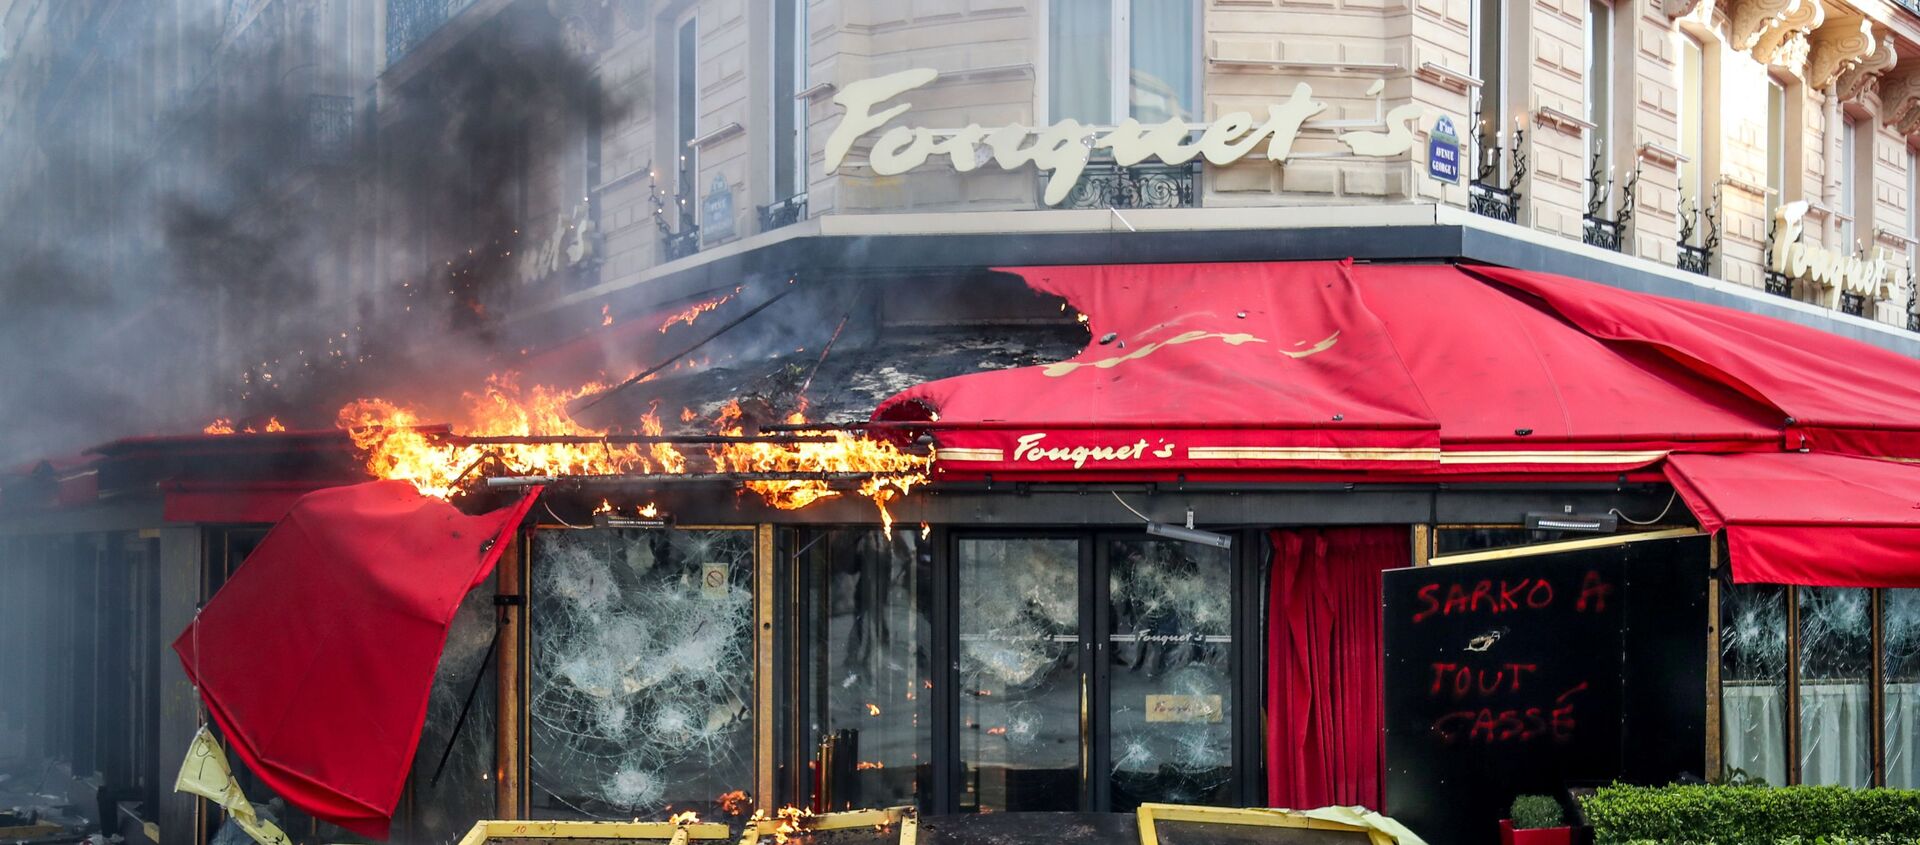 Le restaurant Fouquet's  incendié à Paris  - Sputnik Afrique, 1920, 20.11.2020